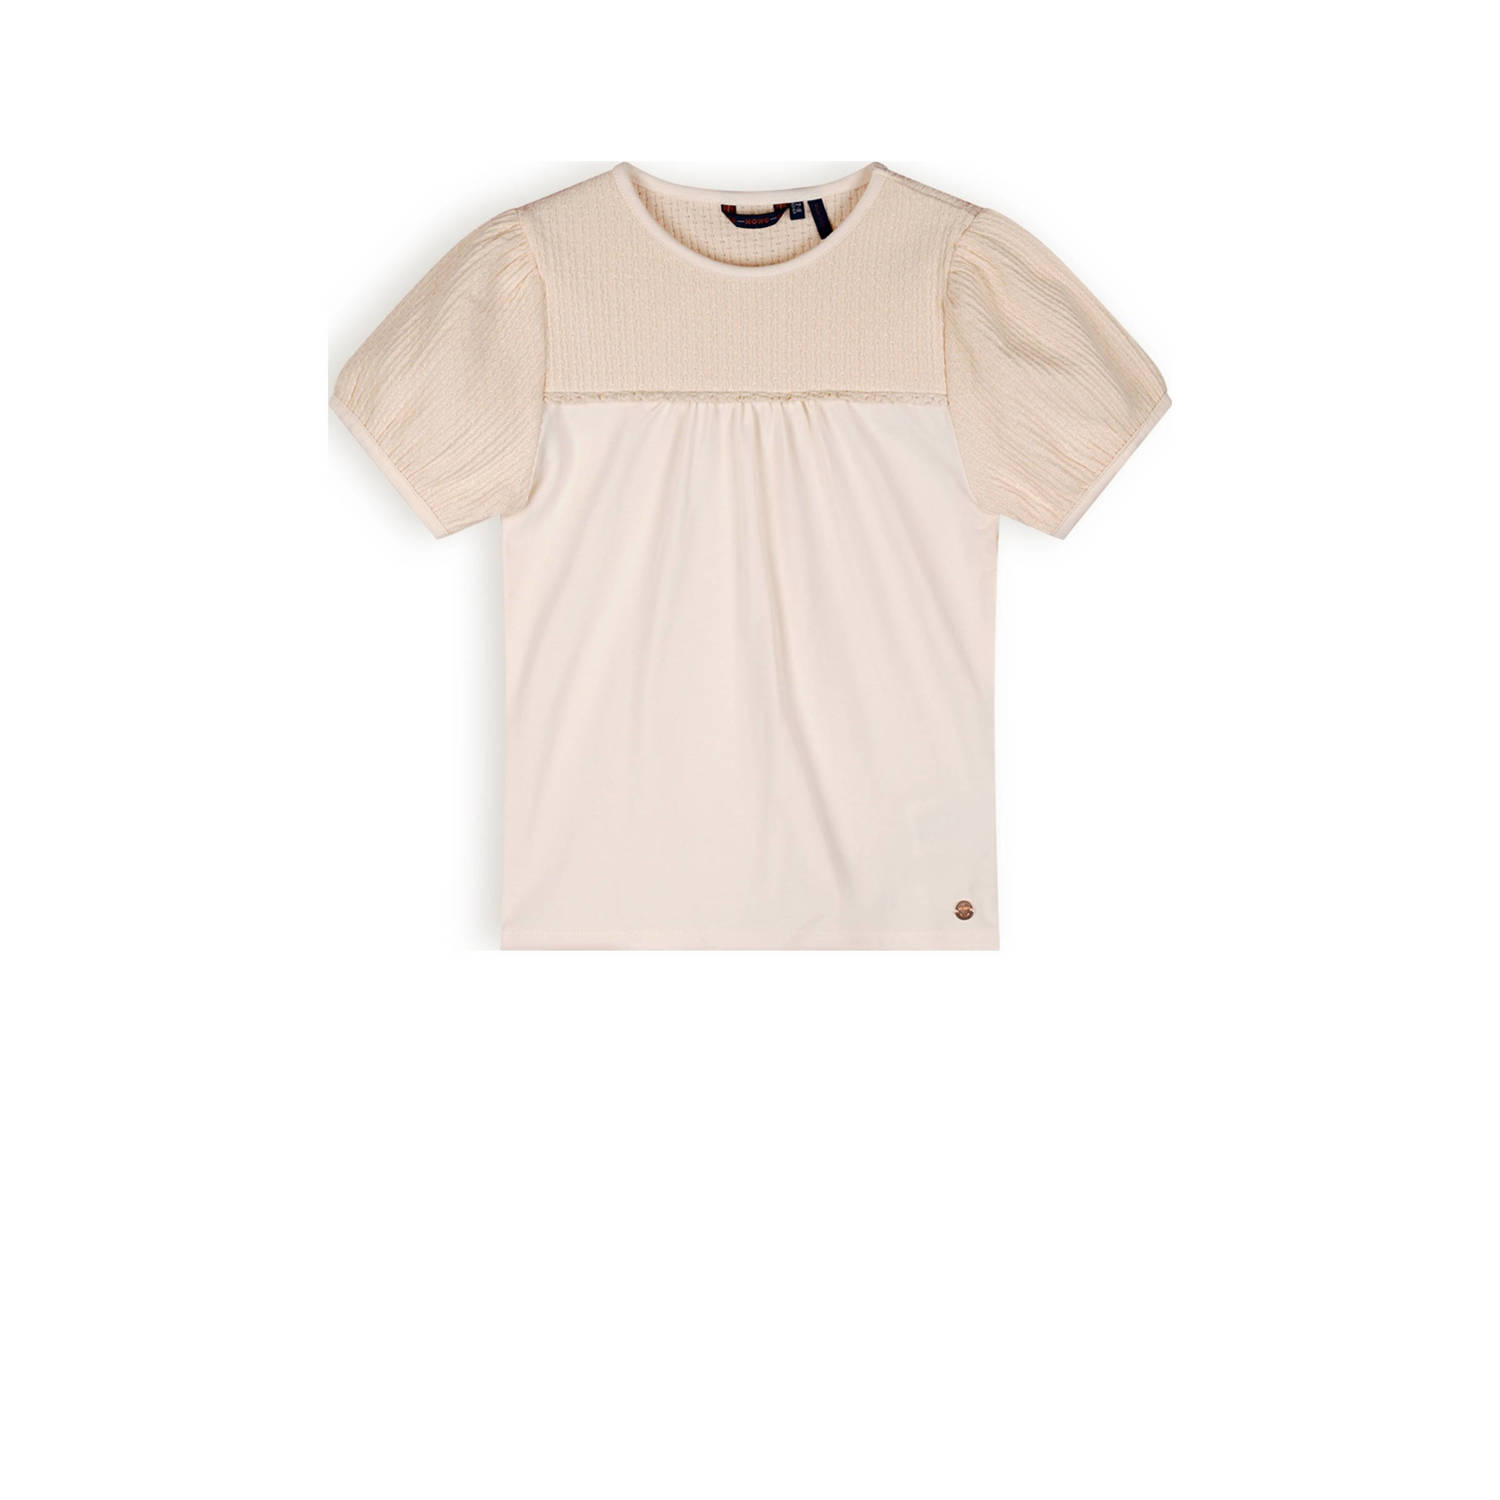 NONO Meisjes Tops & T-shirts Karen T-shirt Mixed Fabris Puffed Shorts Sleeves Ecru